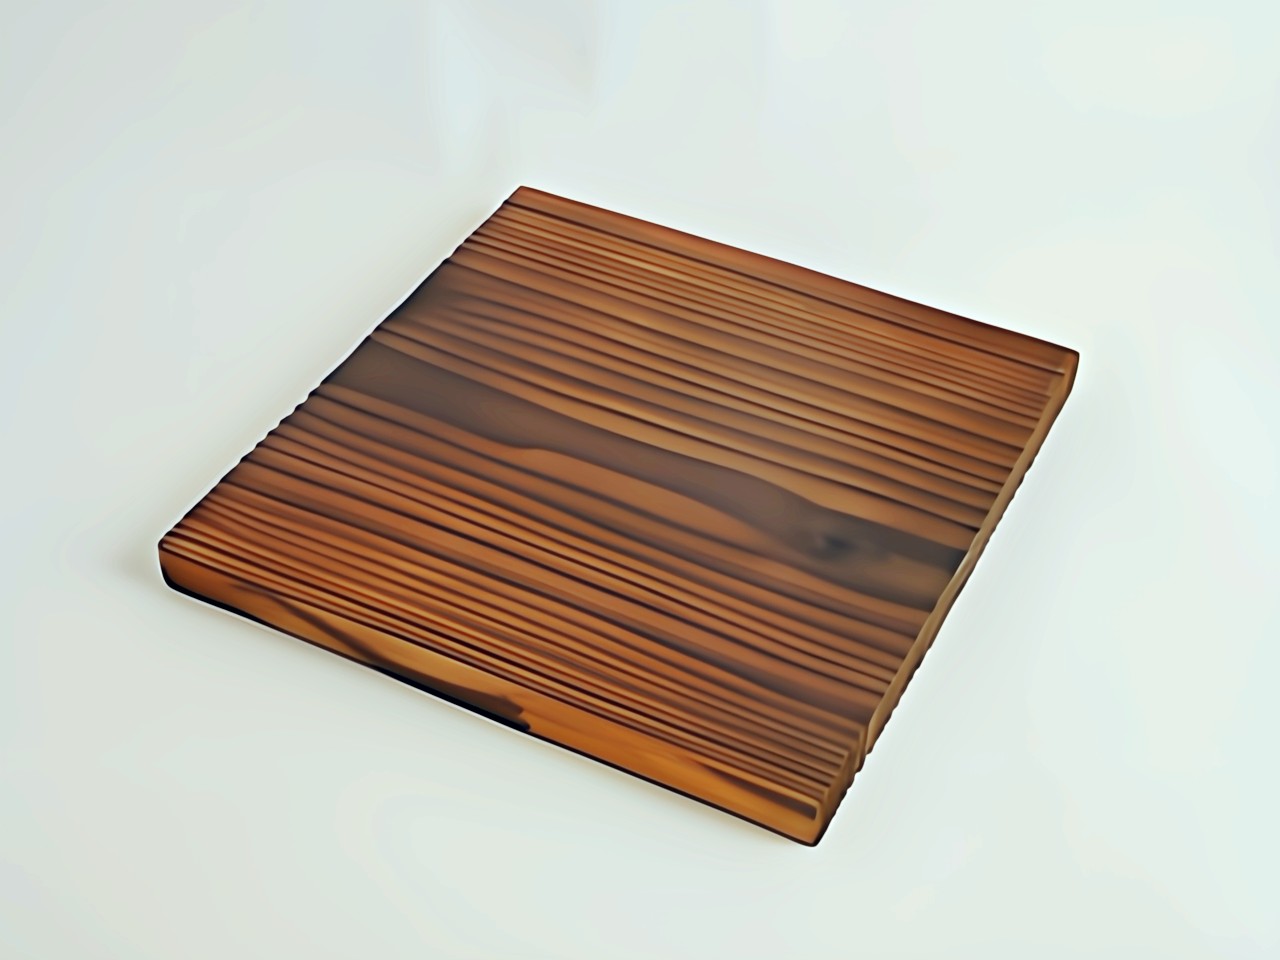 a square wooden board